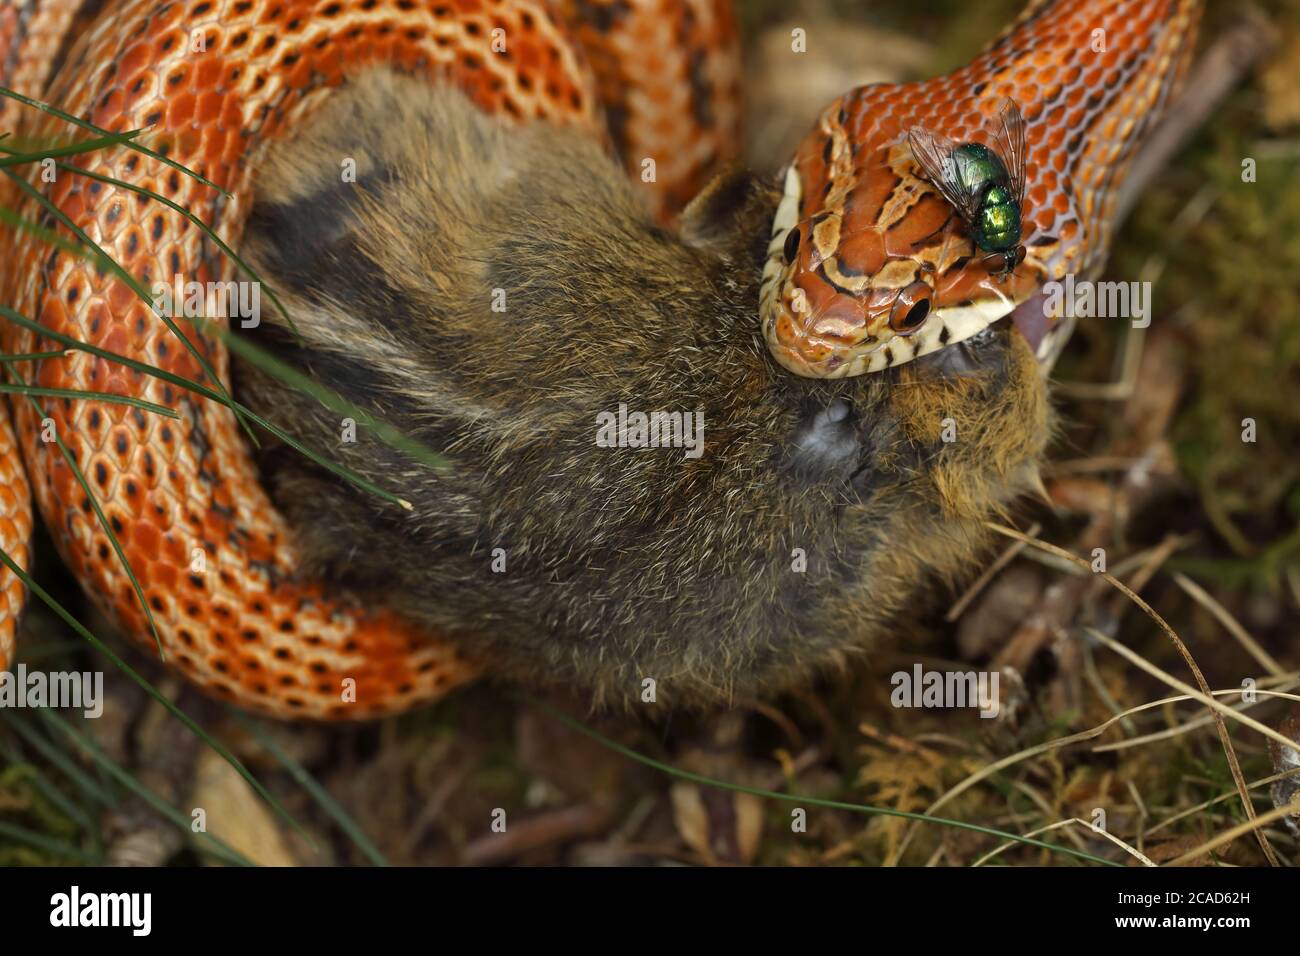 Il serpente di mais (Pantherophis guttatus), mangiando il chipmunk orientale trovato morto e offerto al serpente prigioniero, nativo agli Stati Uniti orientali Foto Stock